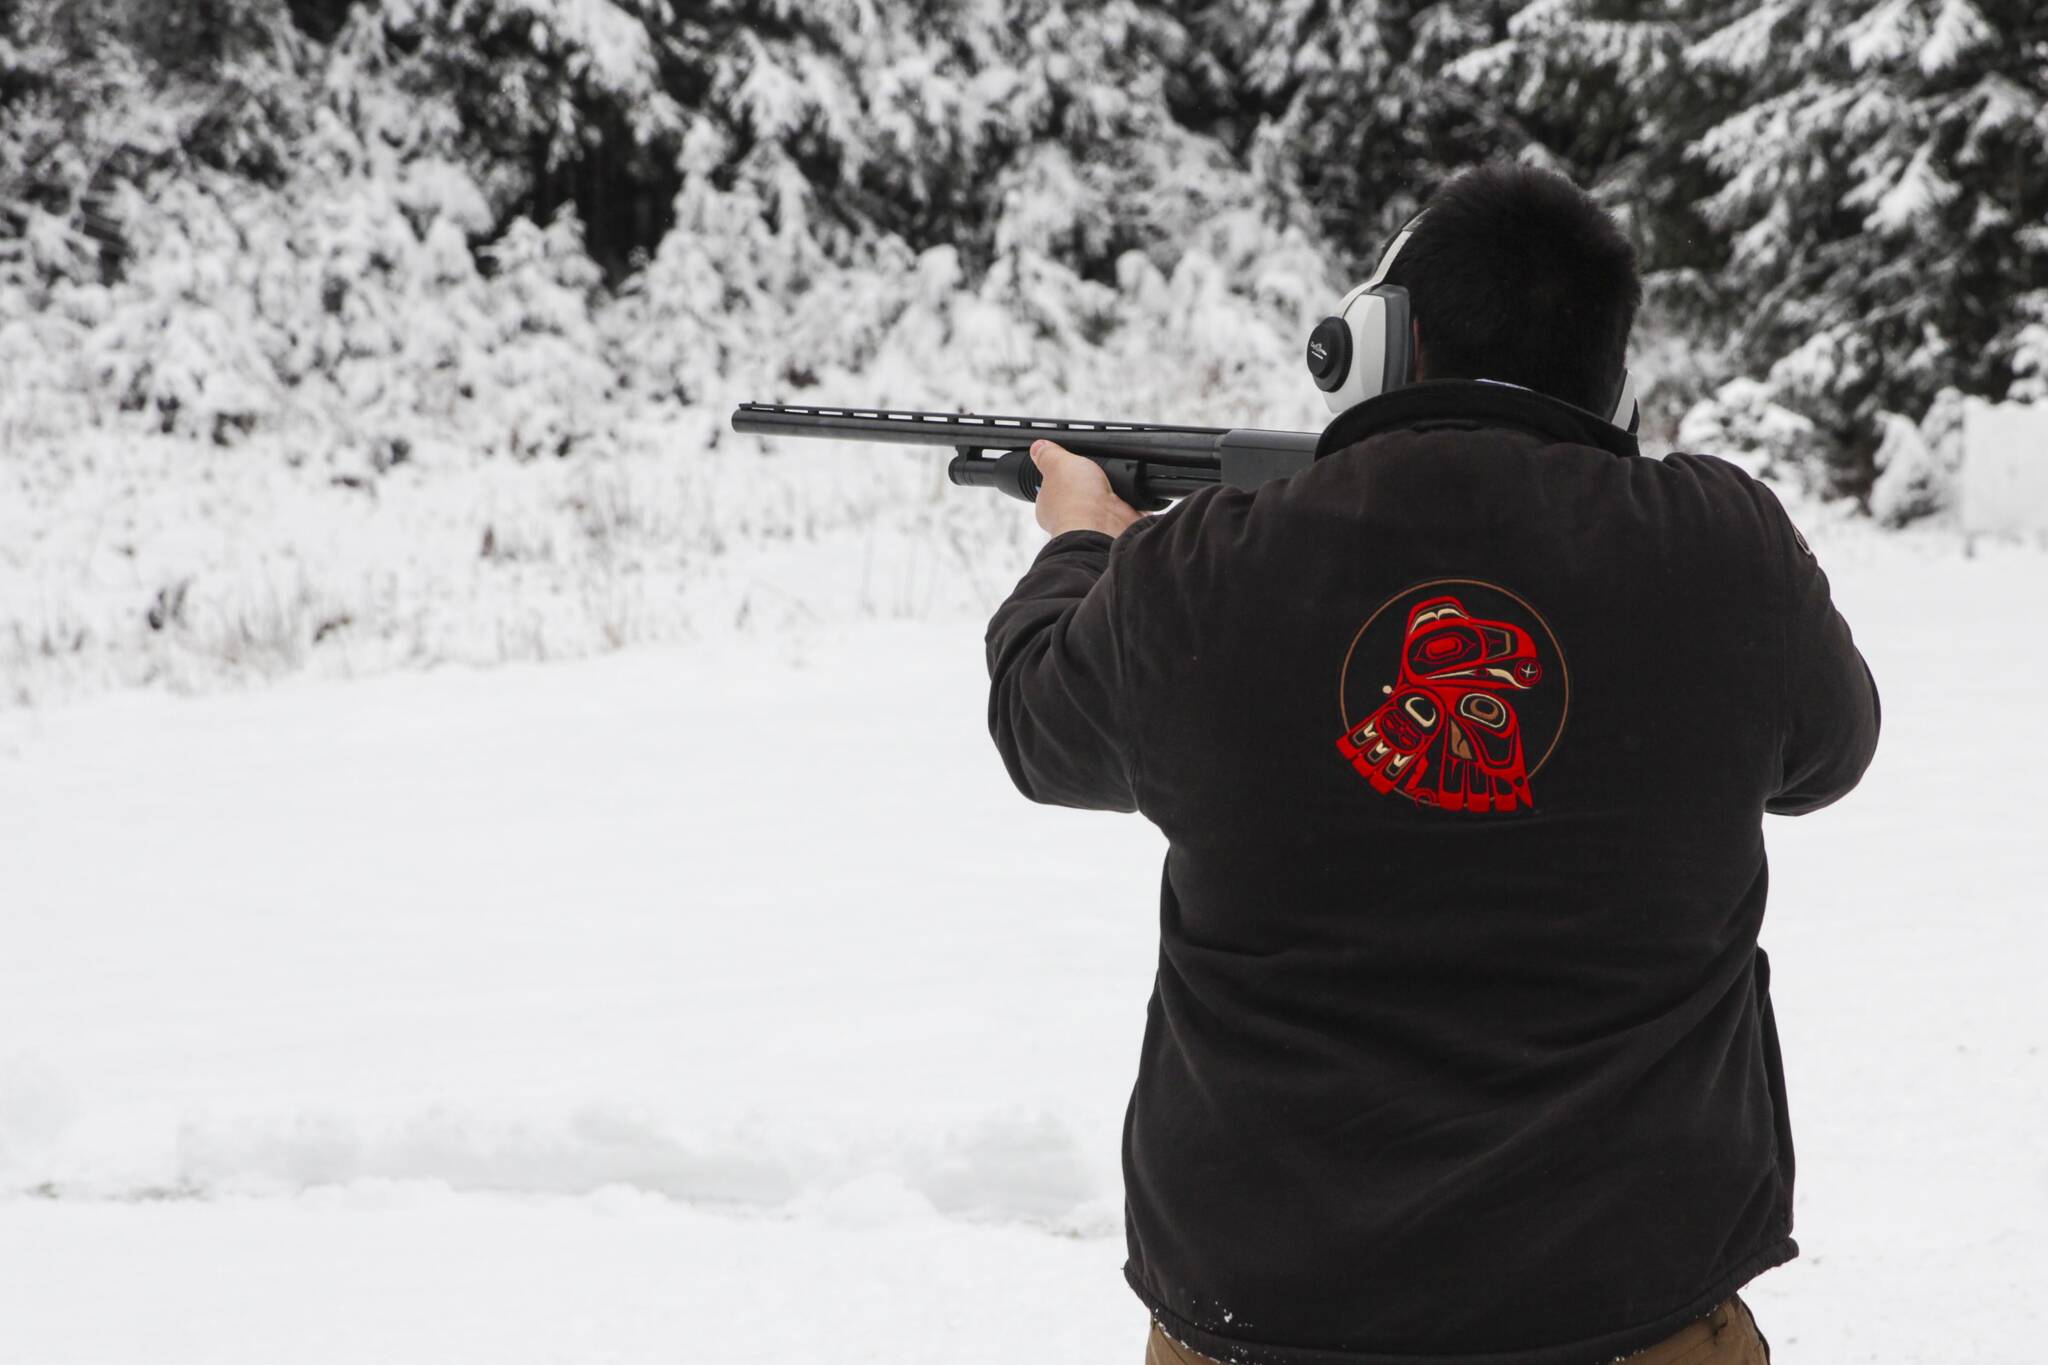 Derek St Clair aims at a target during the Juneau Gun Club’s annual Turkey Shoot on Nov. 20, 2021. (Michael S. Lockett / Juneau Empire)